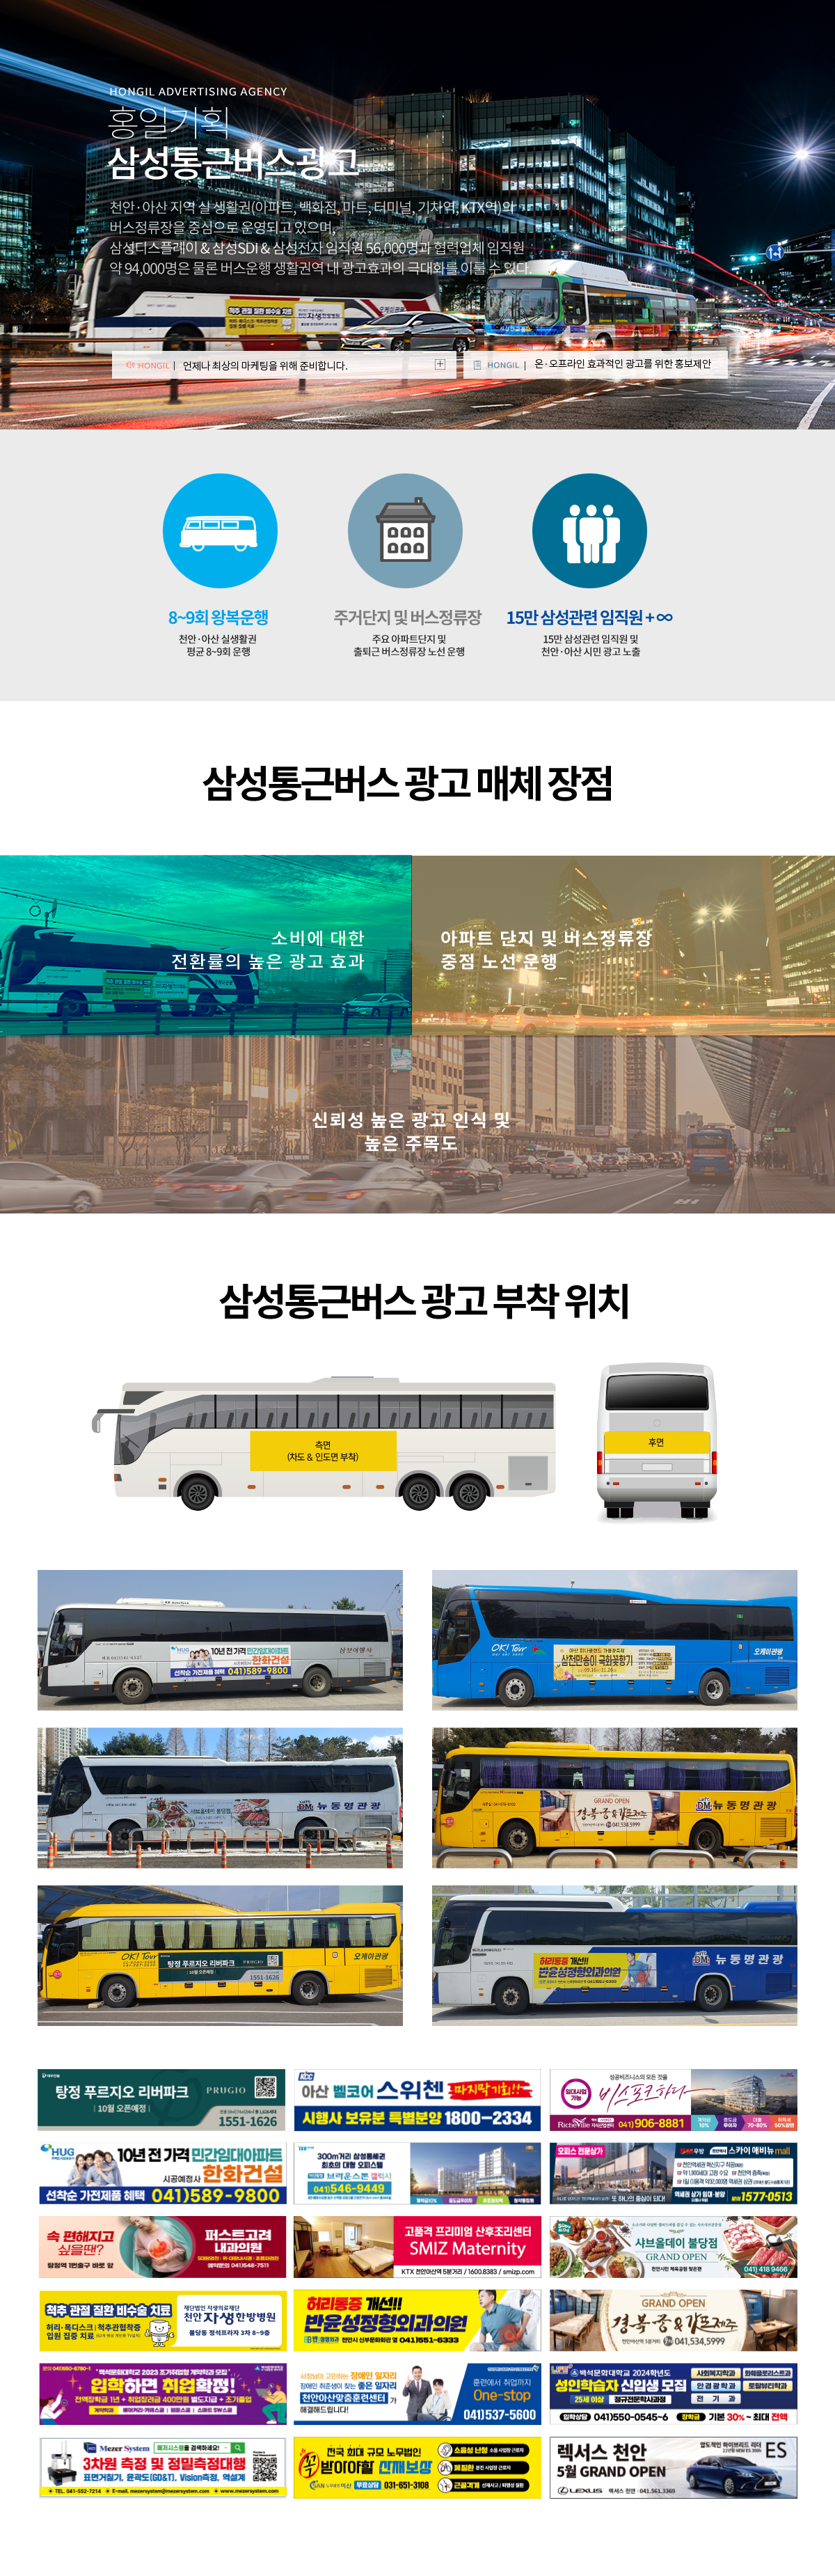 삼성현대통근버스광고